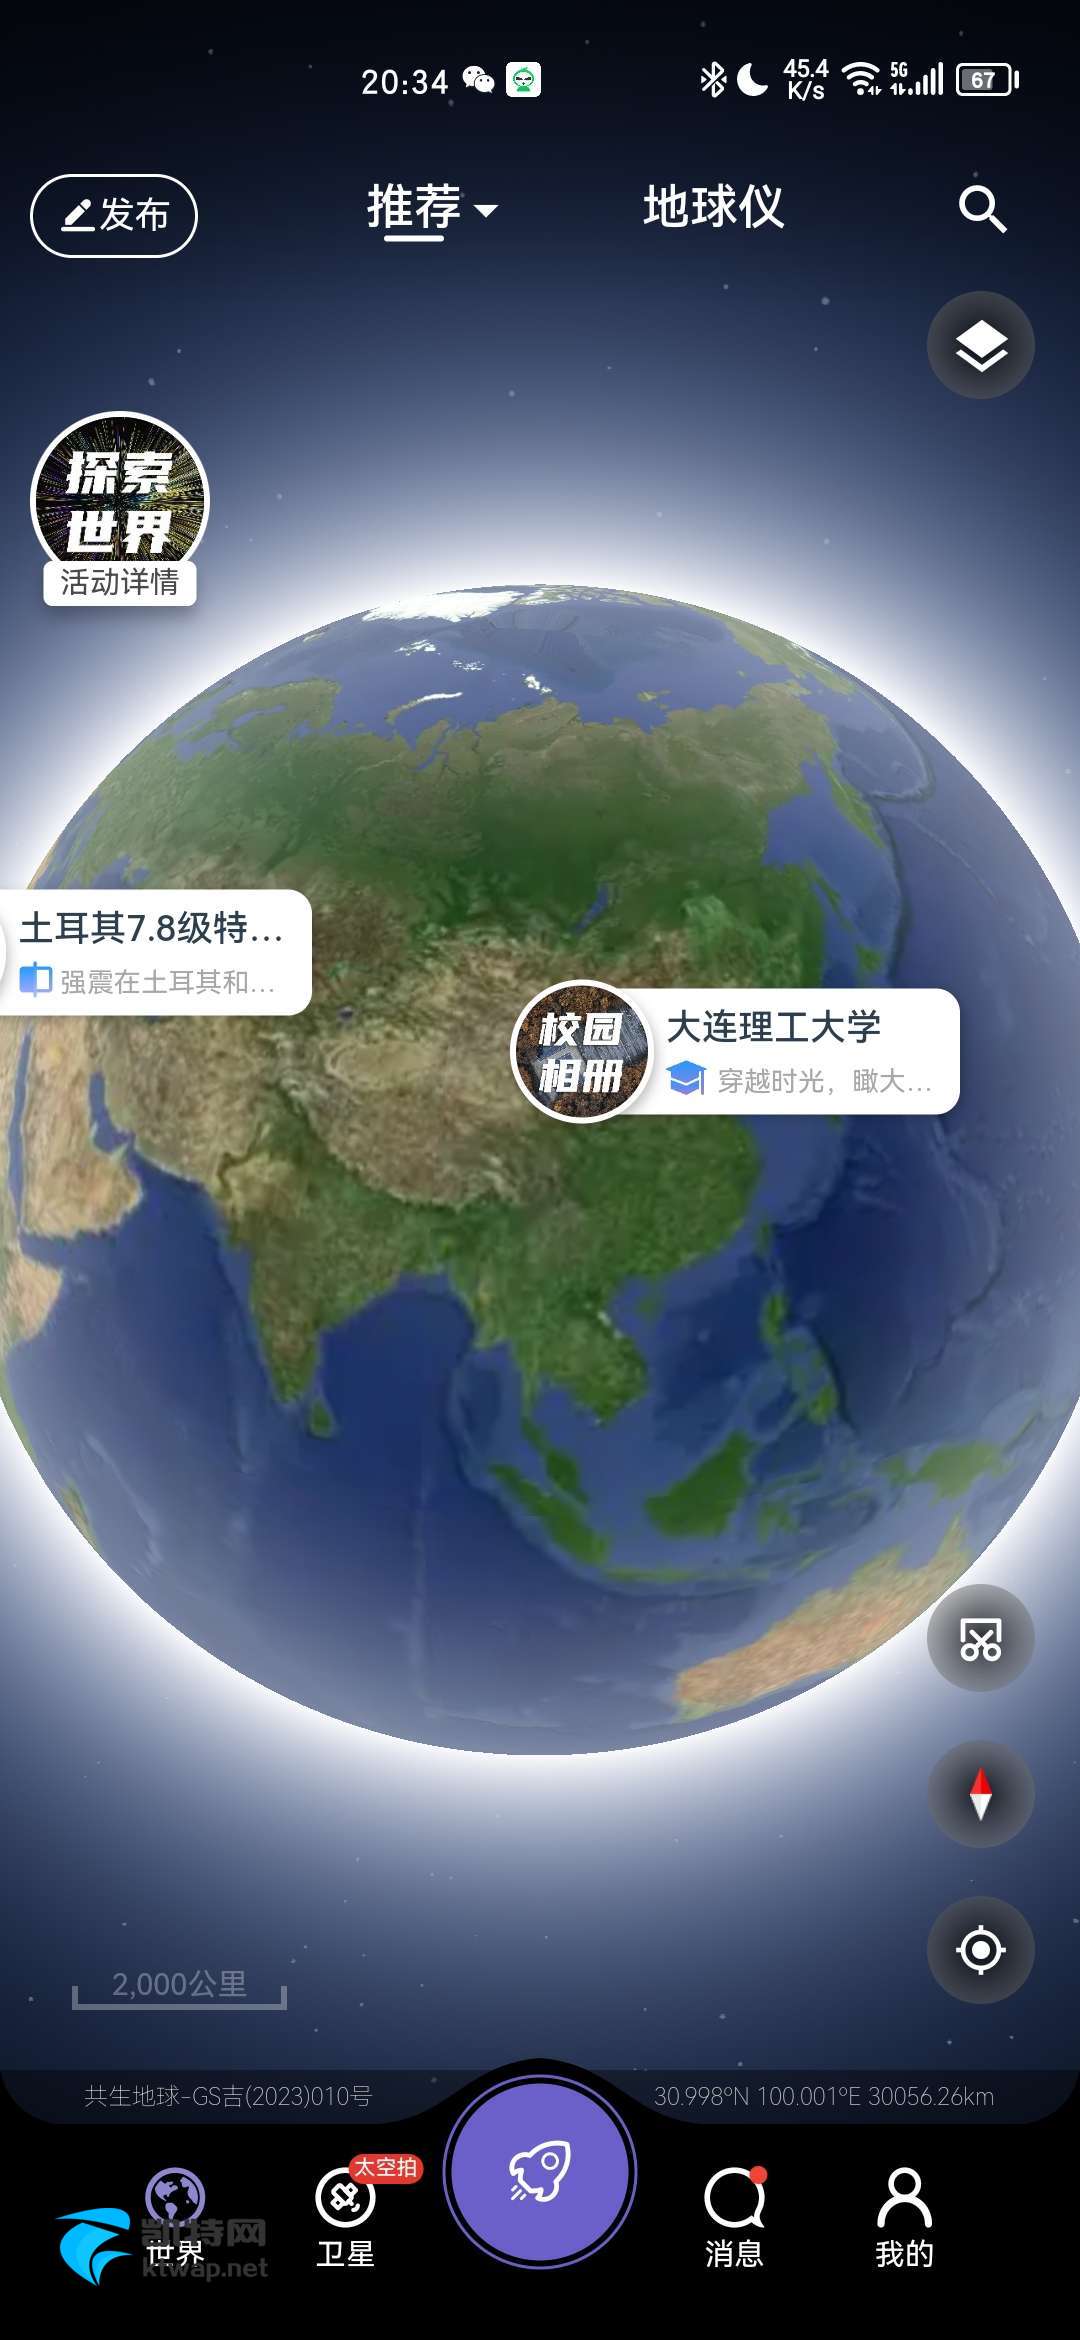 【共享】共生地球v1.1.14国产版谷歌地图